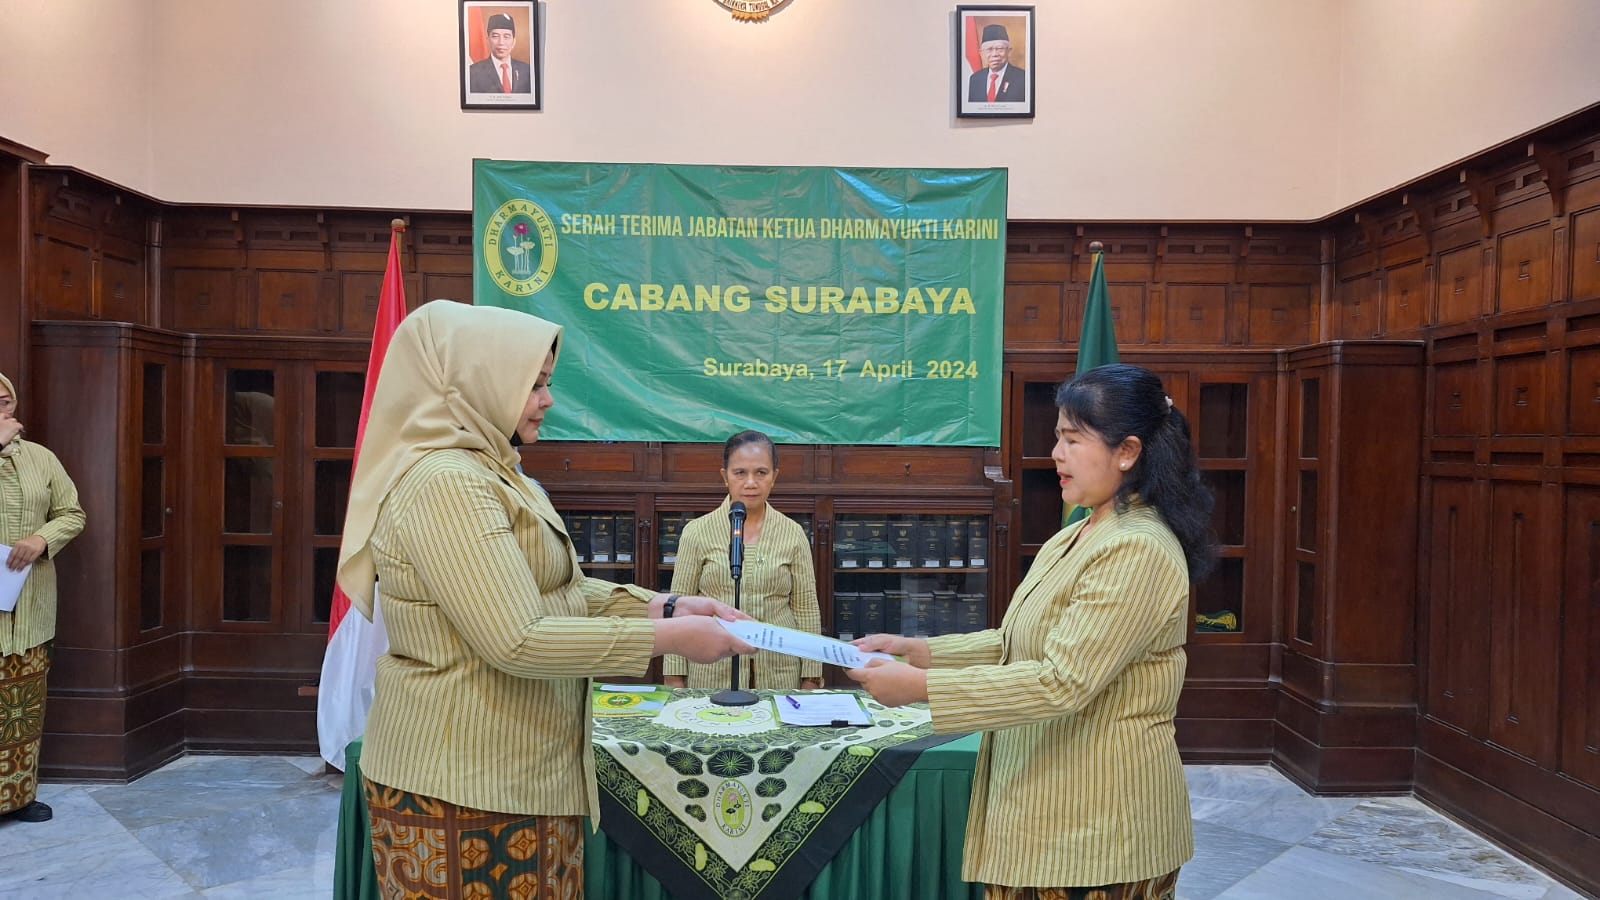 Serah Terima Jabatan Ketua Dharmayukti Karini Cabang Surabaya